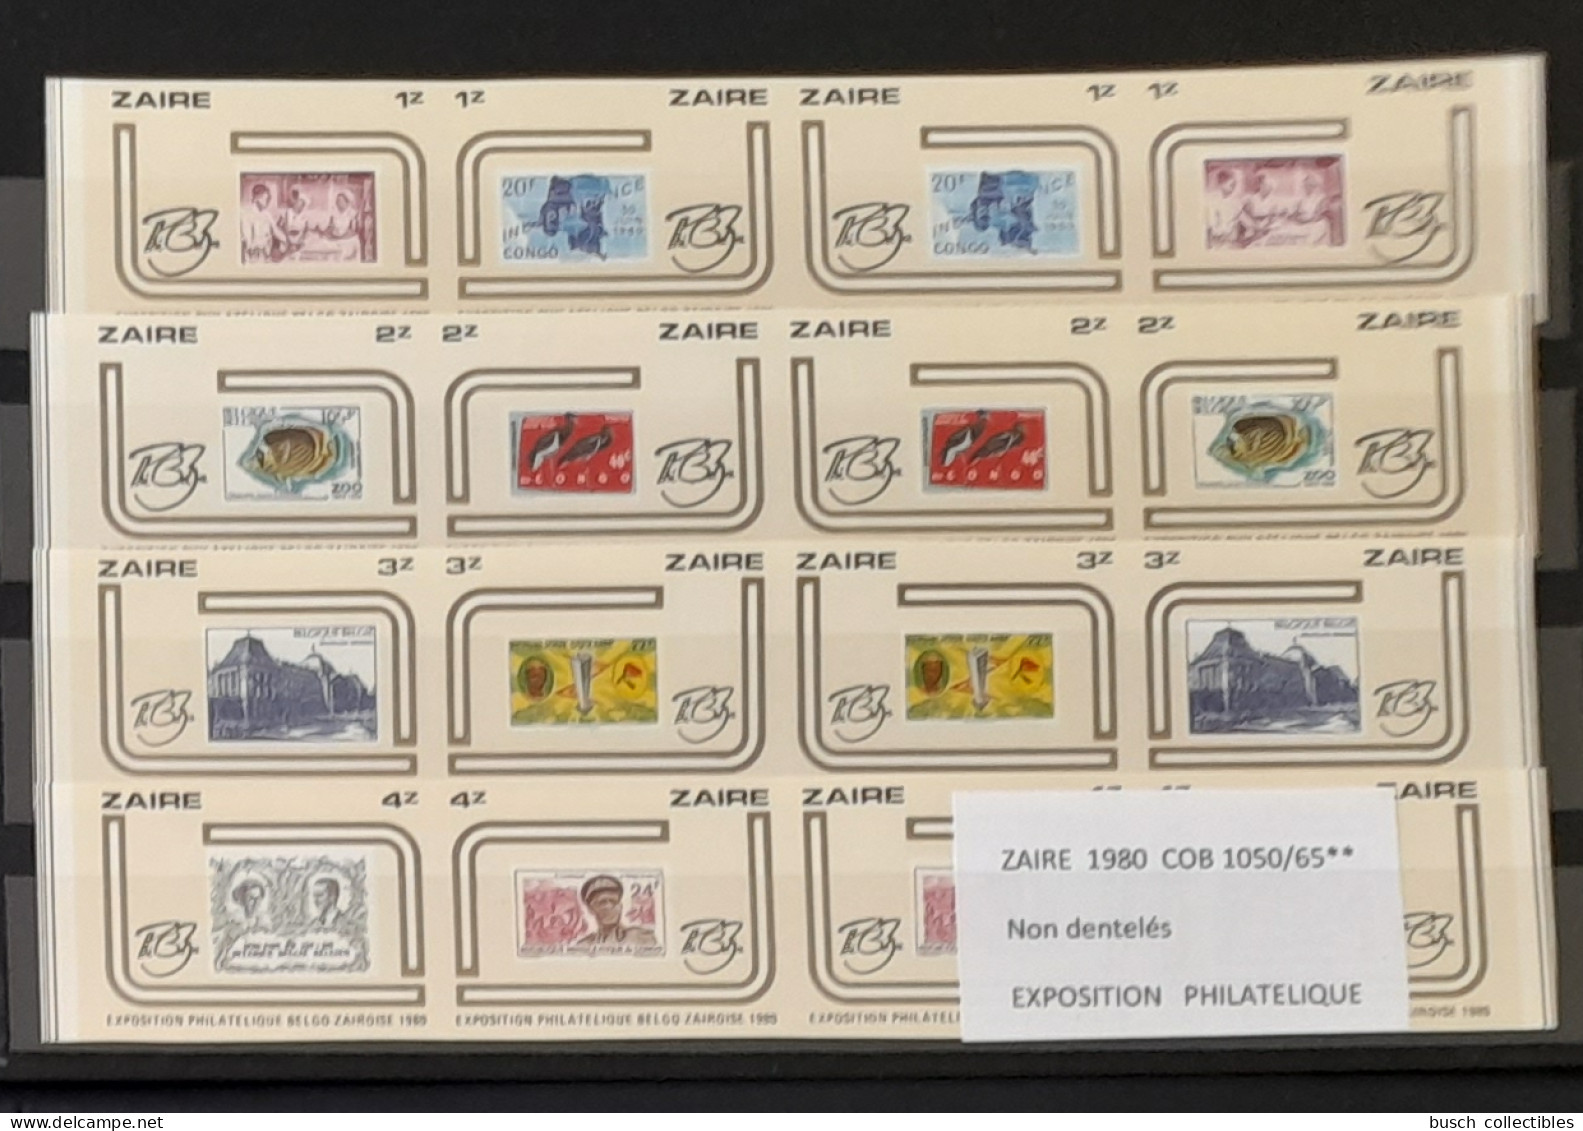 Congo Zaire 1980 COB 1050 - 1065 IMPERF Non Dentelé Exposition Philatélique Zairoise Stamp Exhibition Timbres Sur Stamps - Stamps On Stamps